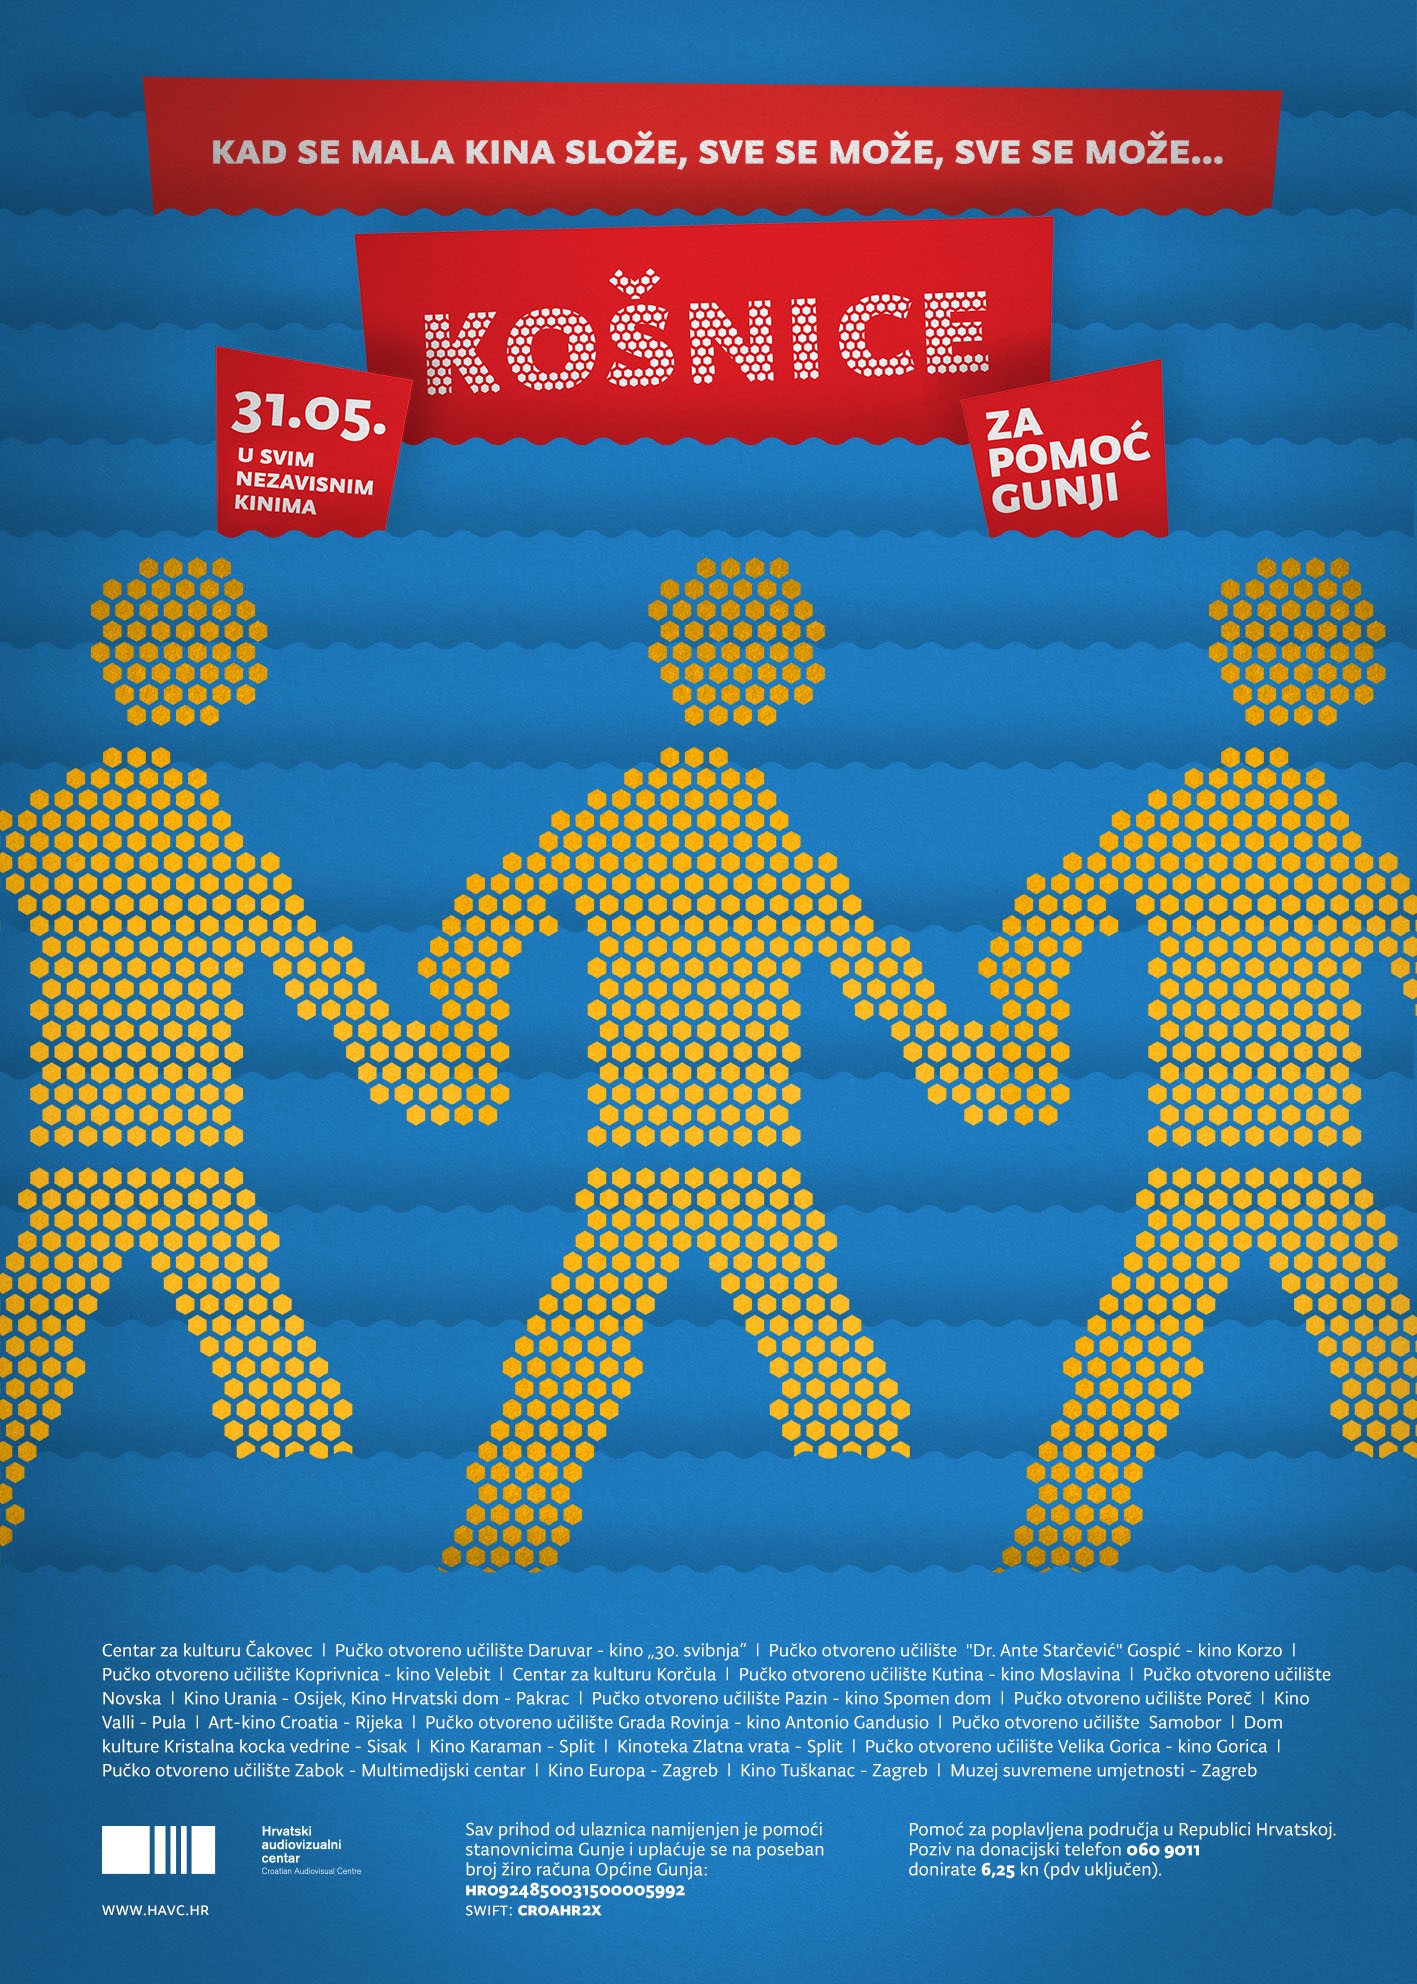 You are currently viewing Krenimo u kino: Film Košnice u 23 nezavisna digitalizirana kina za pomoć Gunji